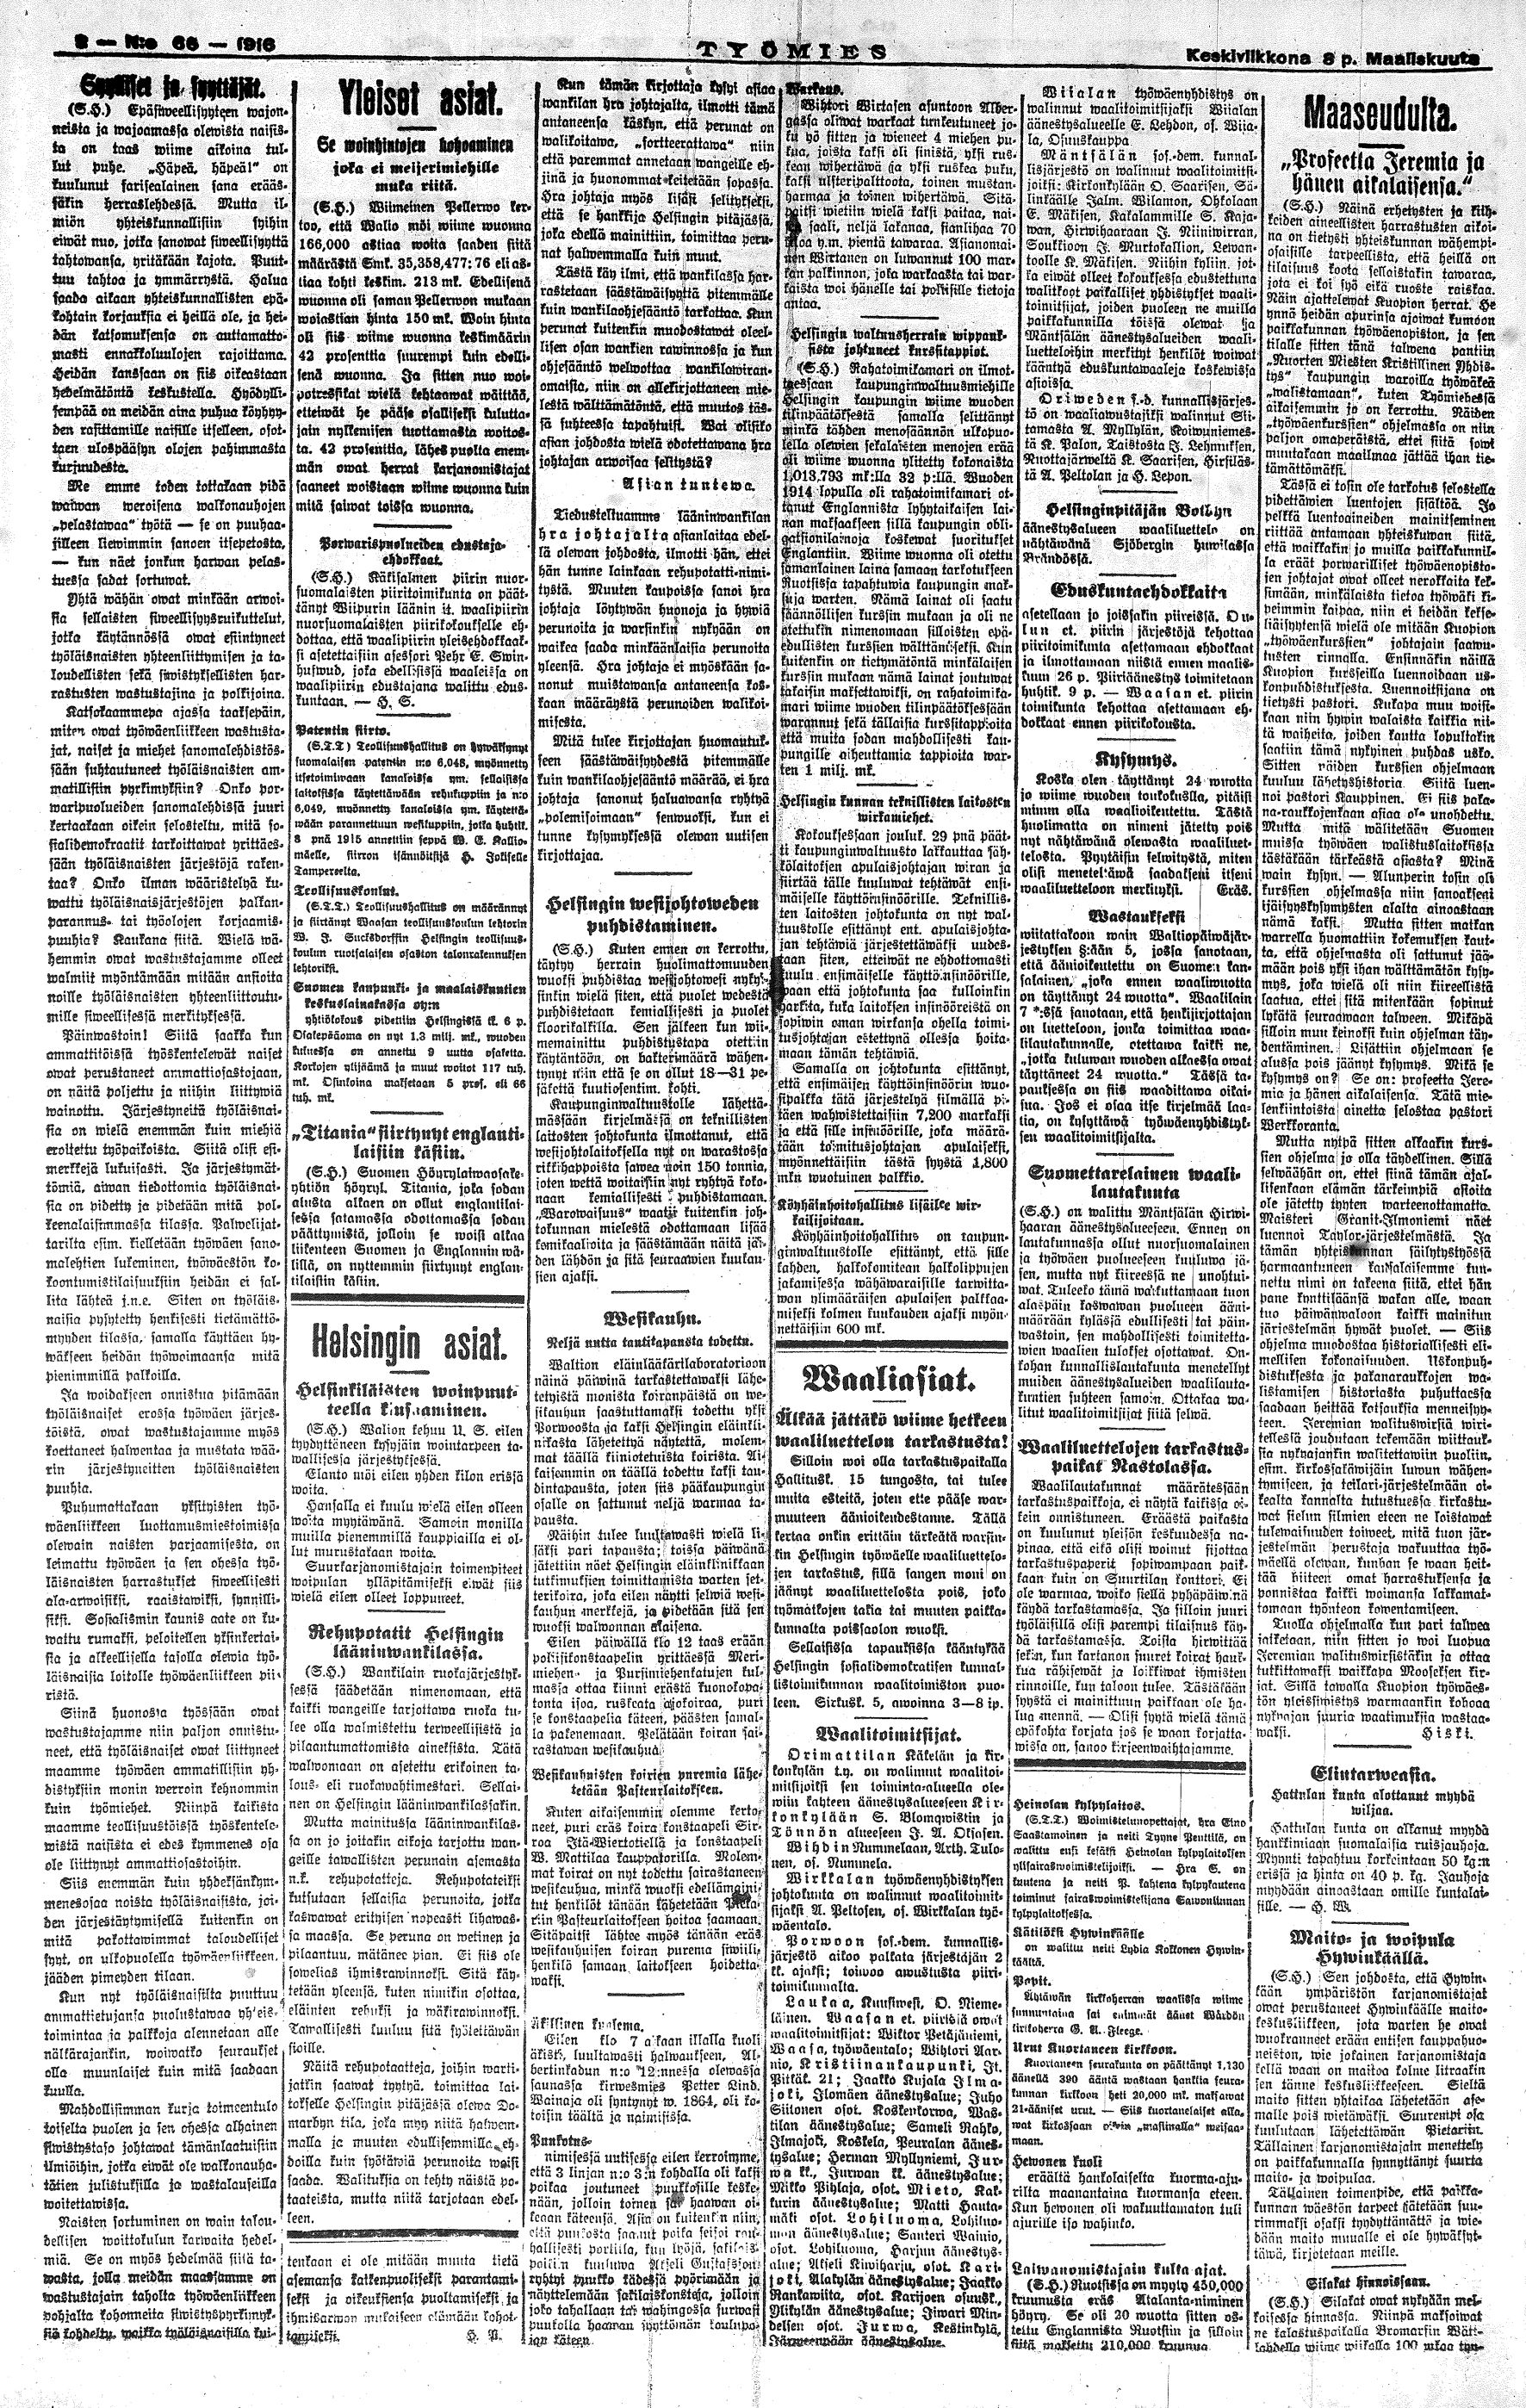 Poliittisen lehdistön kultakausi alkoi vuoden 1905 suurlakosta – Svinhuvfud